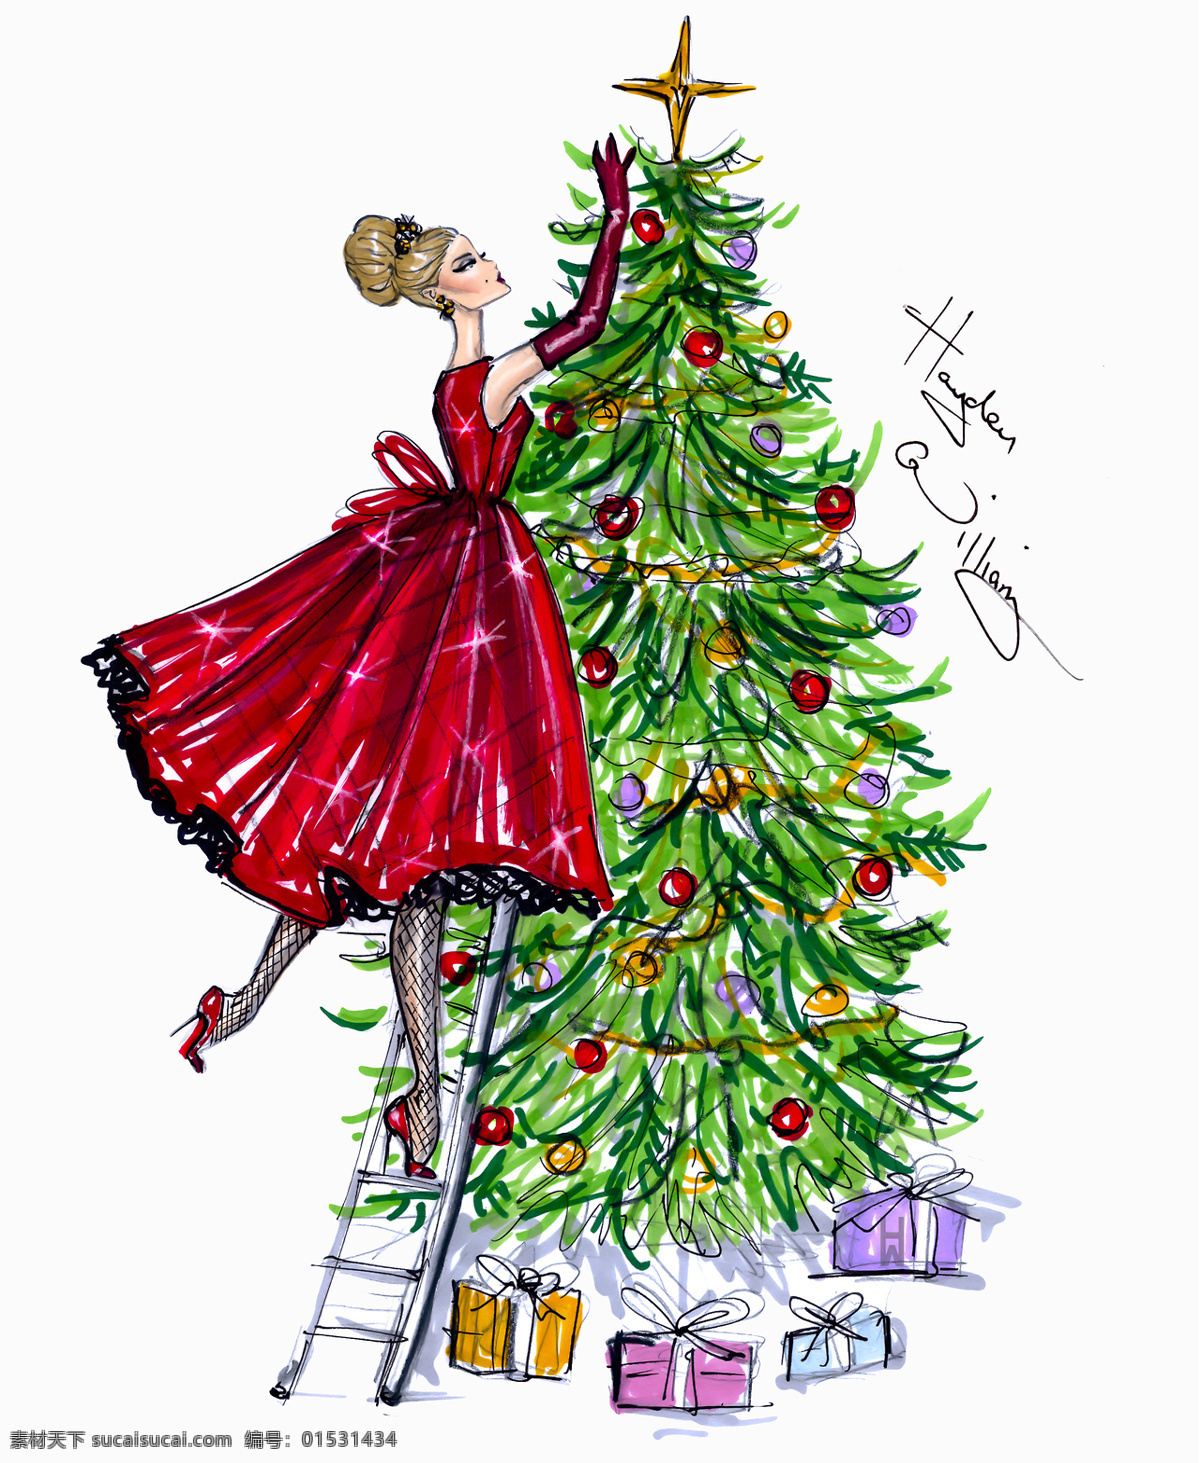 红色 蓬 裙 圣诞球 效果图 服装设计 时尚女装 职业女装 职业装 女装设计 短裙 衬衫 服装 服装效果图 连衣裙